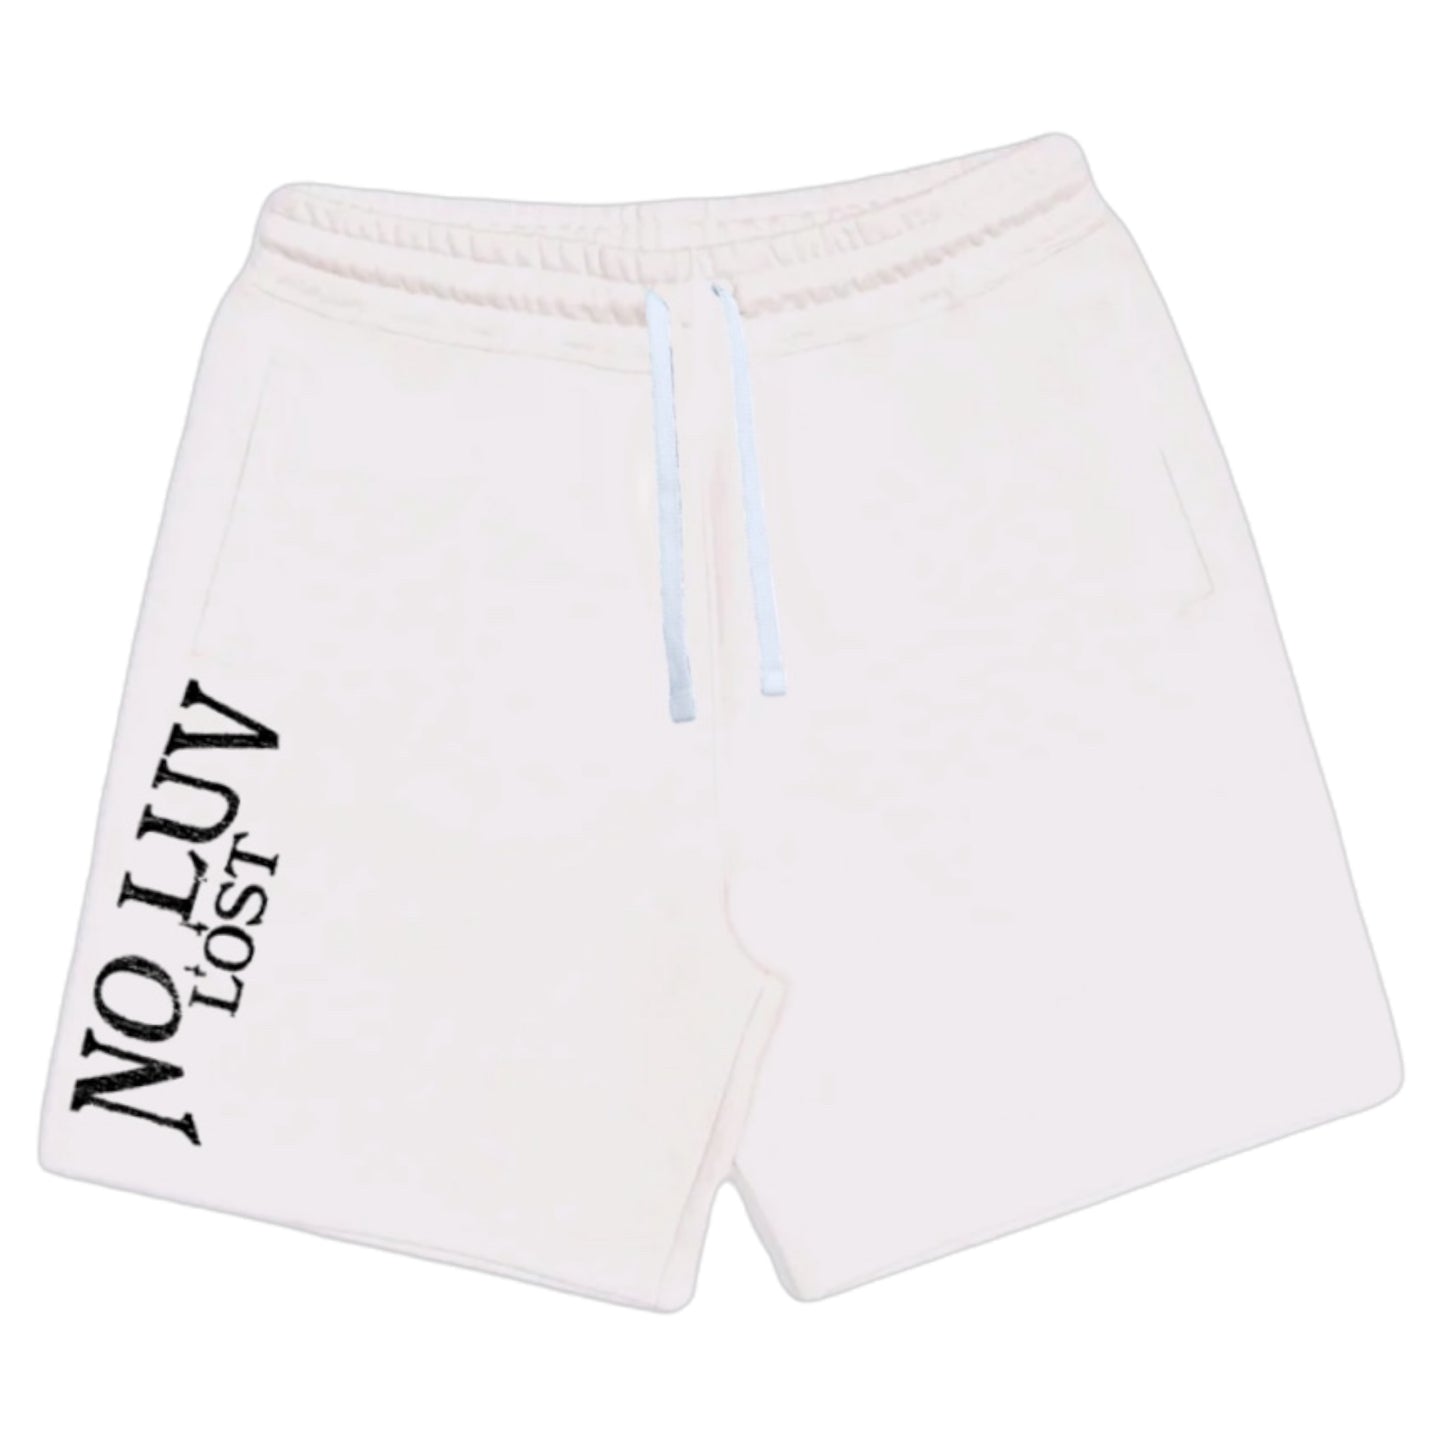 NLL shorts (White/Black)